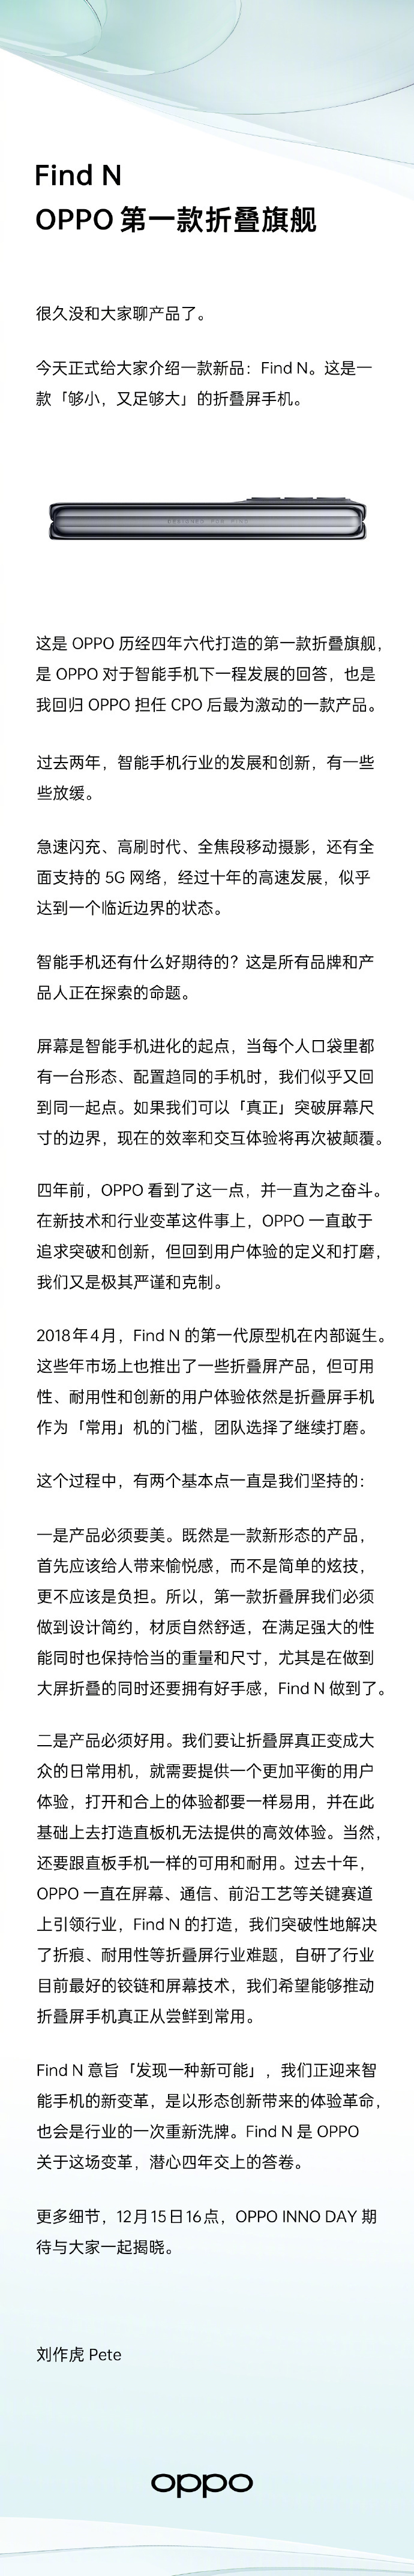 刘作虎官宣OPPO Find N 新机 OPPO 第一款折叠屏手机